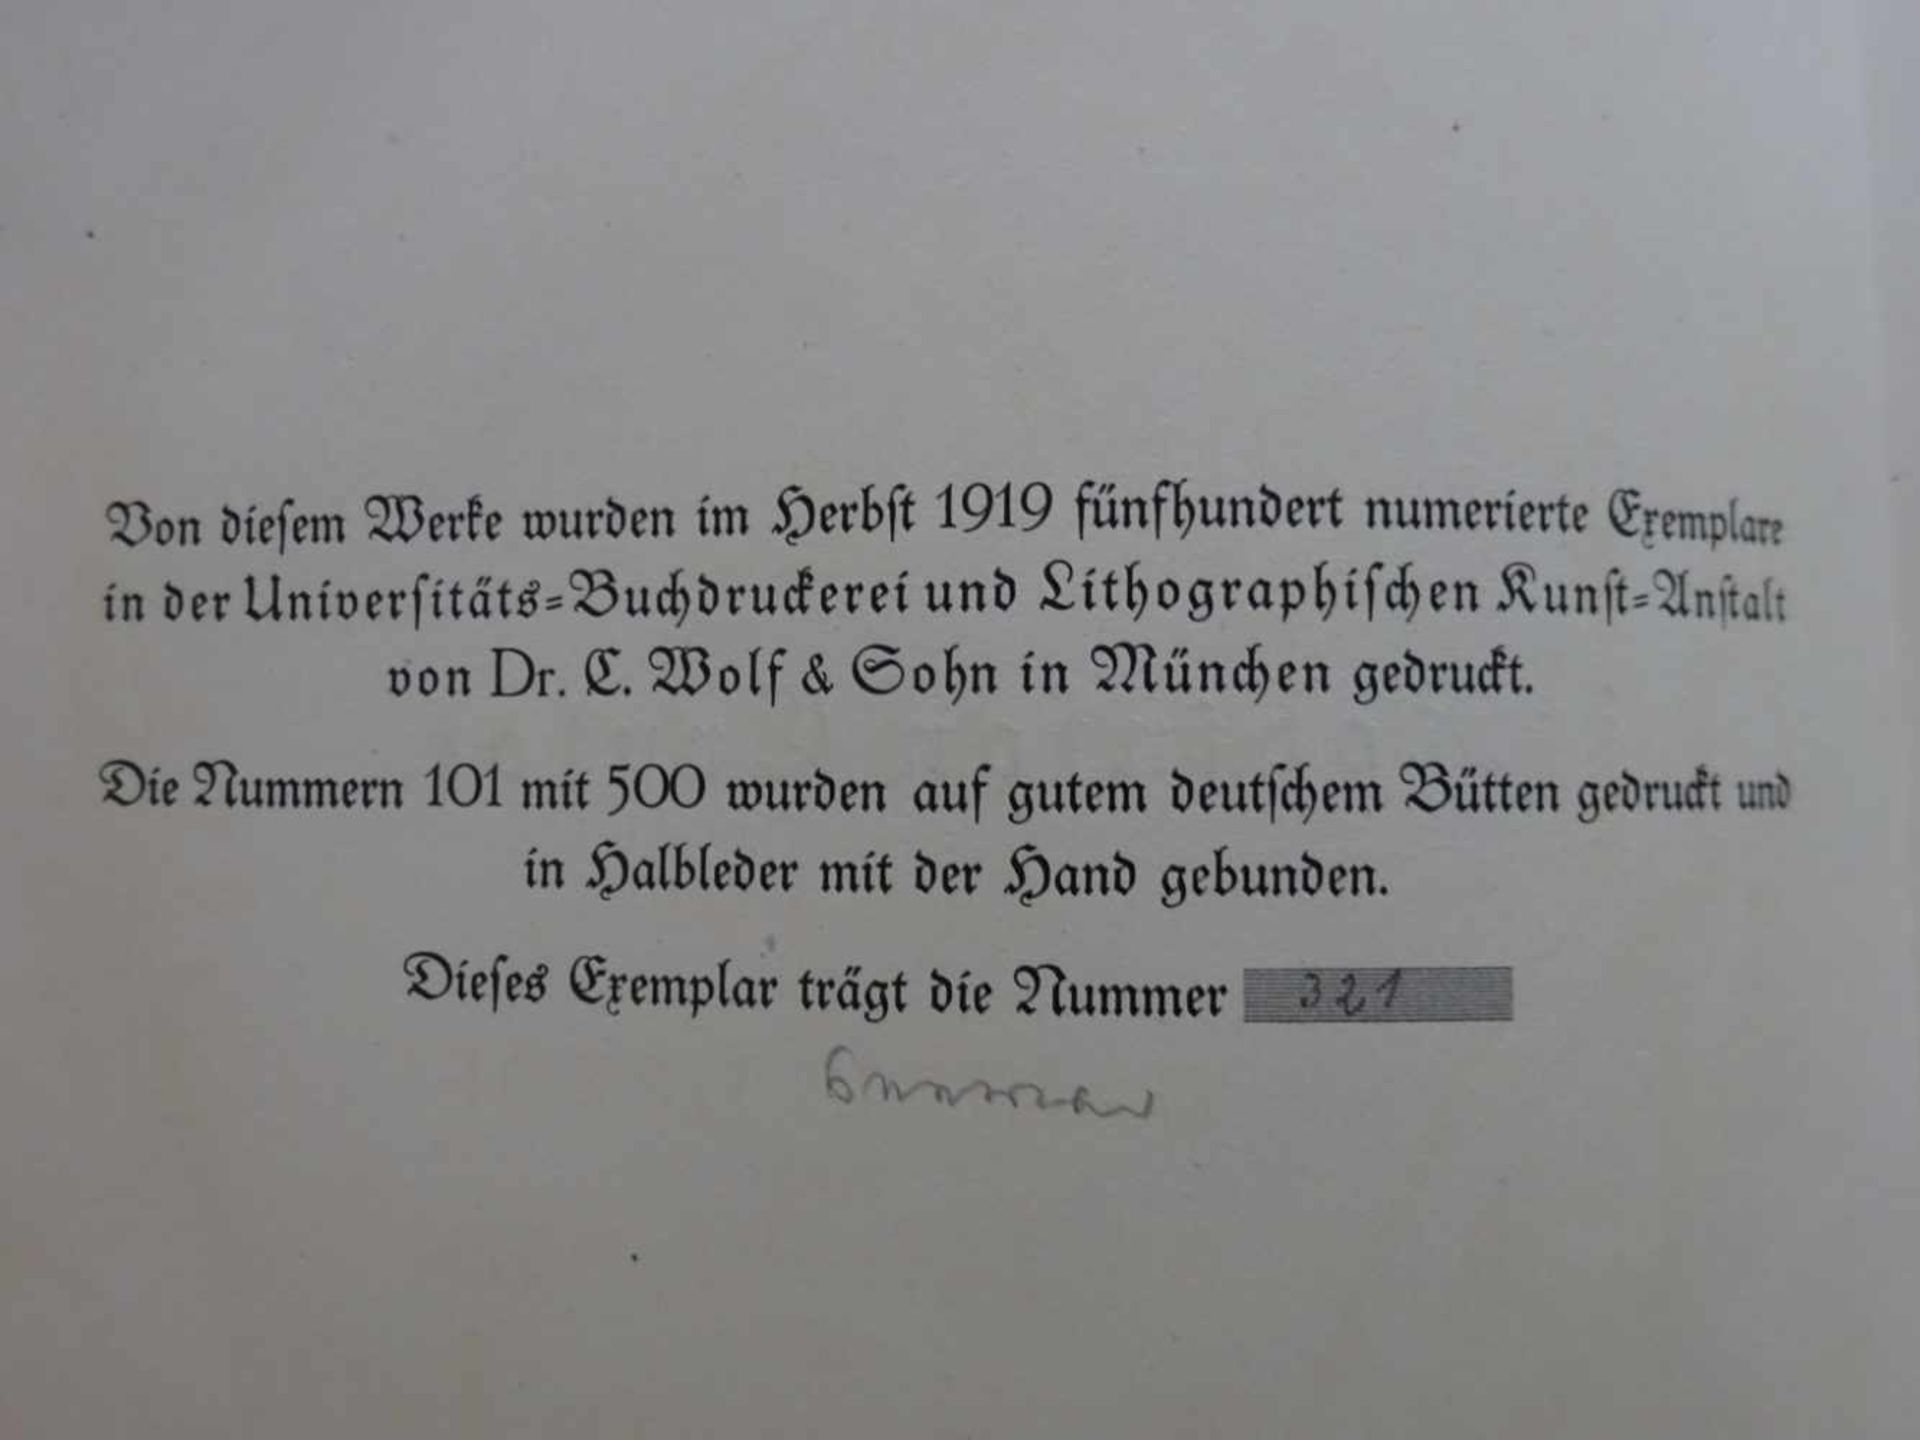 Pressendrucke.- Defoe, D.Robinson Crusoe. München, Goltz, 1919. 4 Bll., 317 S. Mit 85 Illustrationen - Bild 3 aus 6